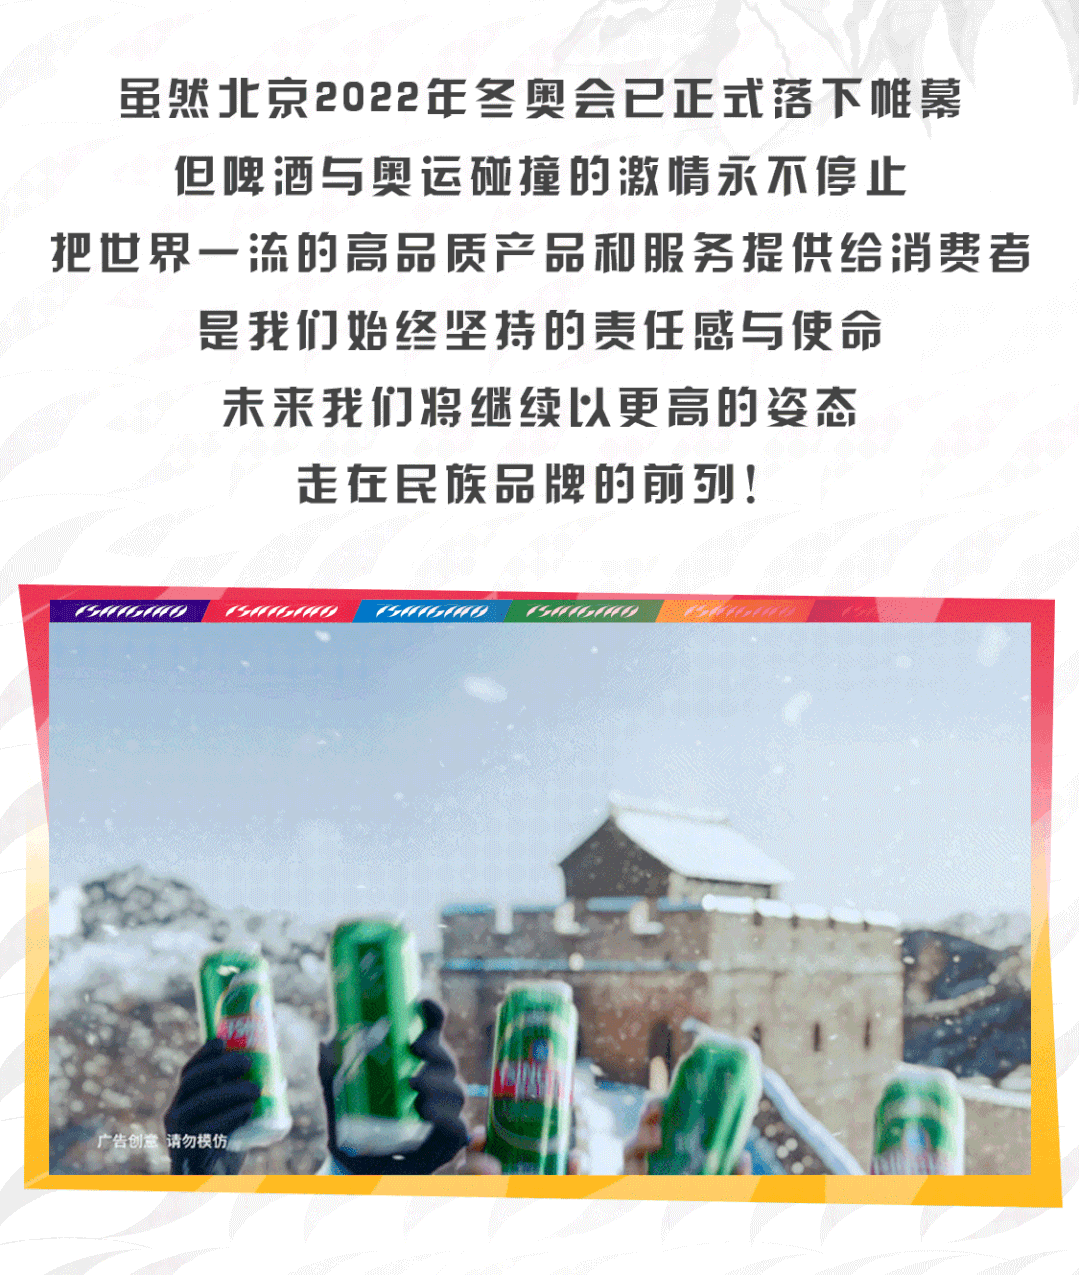 点燃心中冰雪激情——回首青岛啤酒助威北京冬奥的精彩瞬间